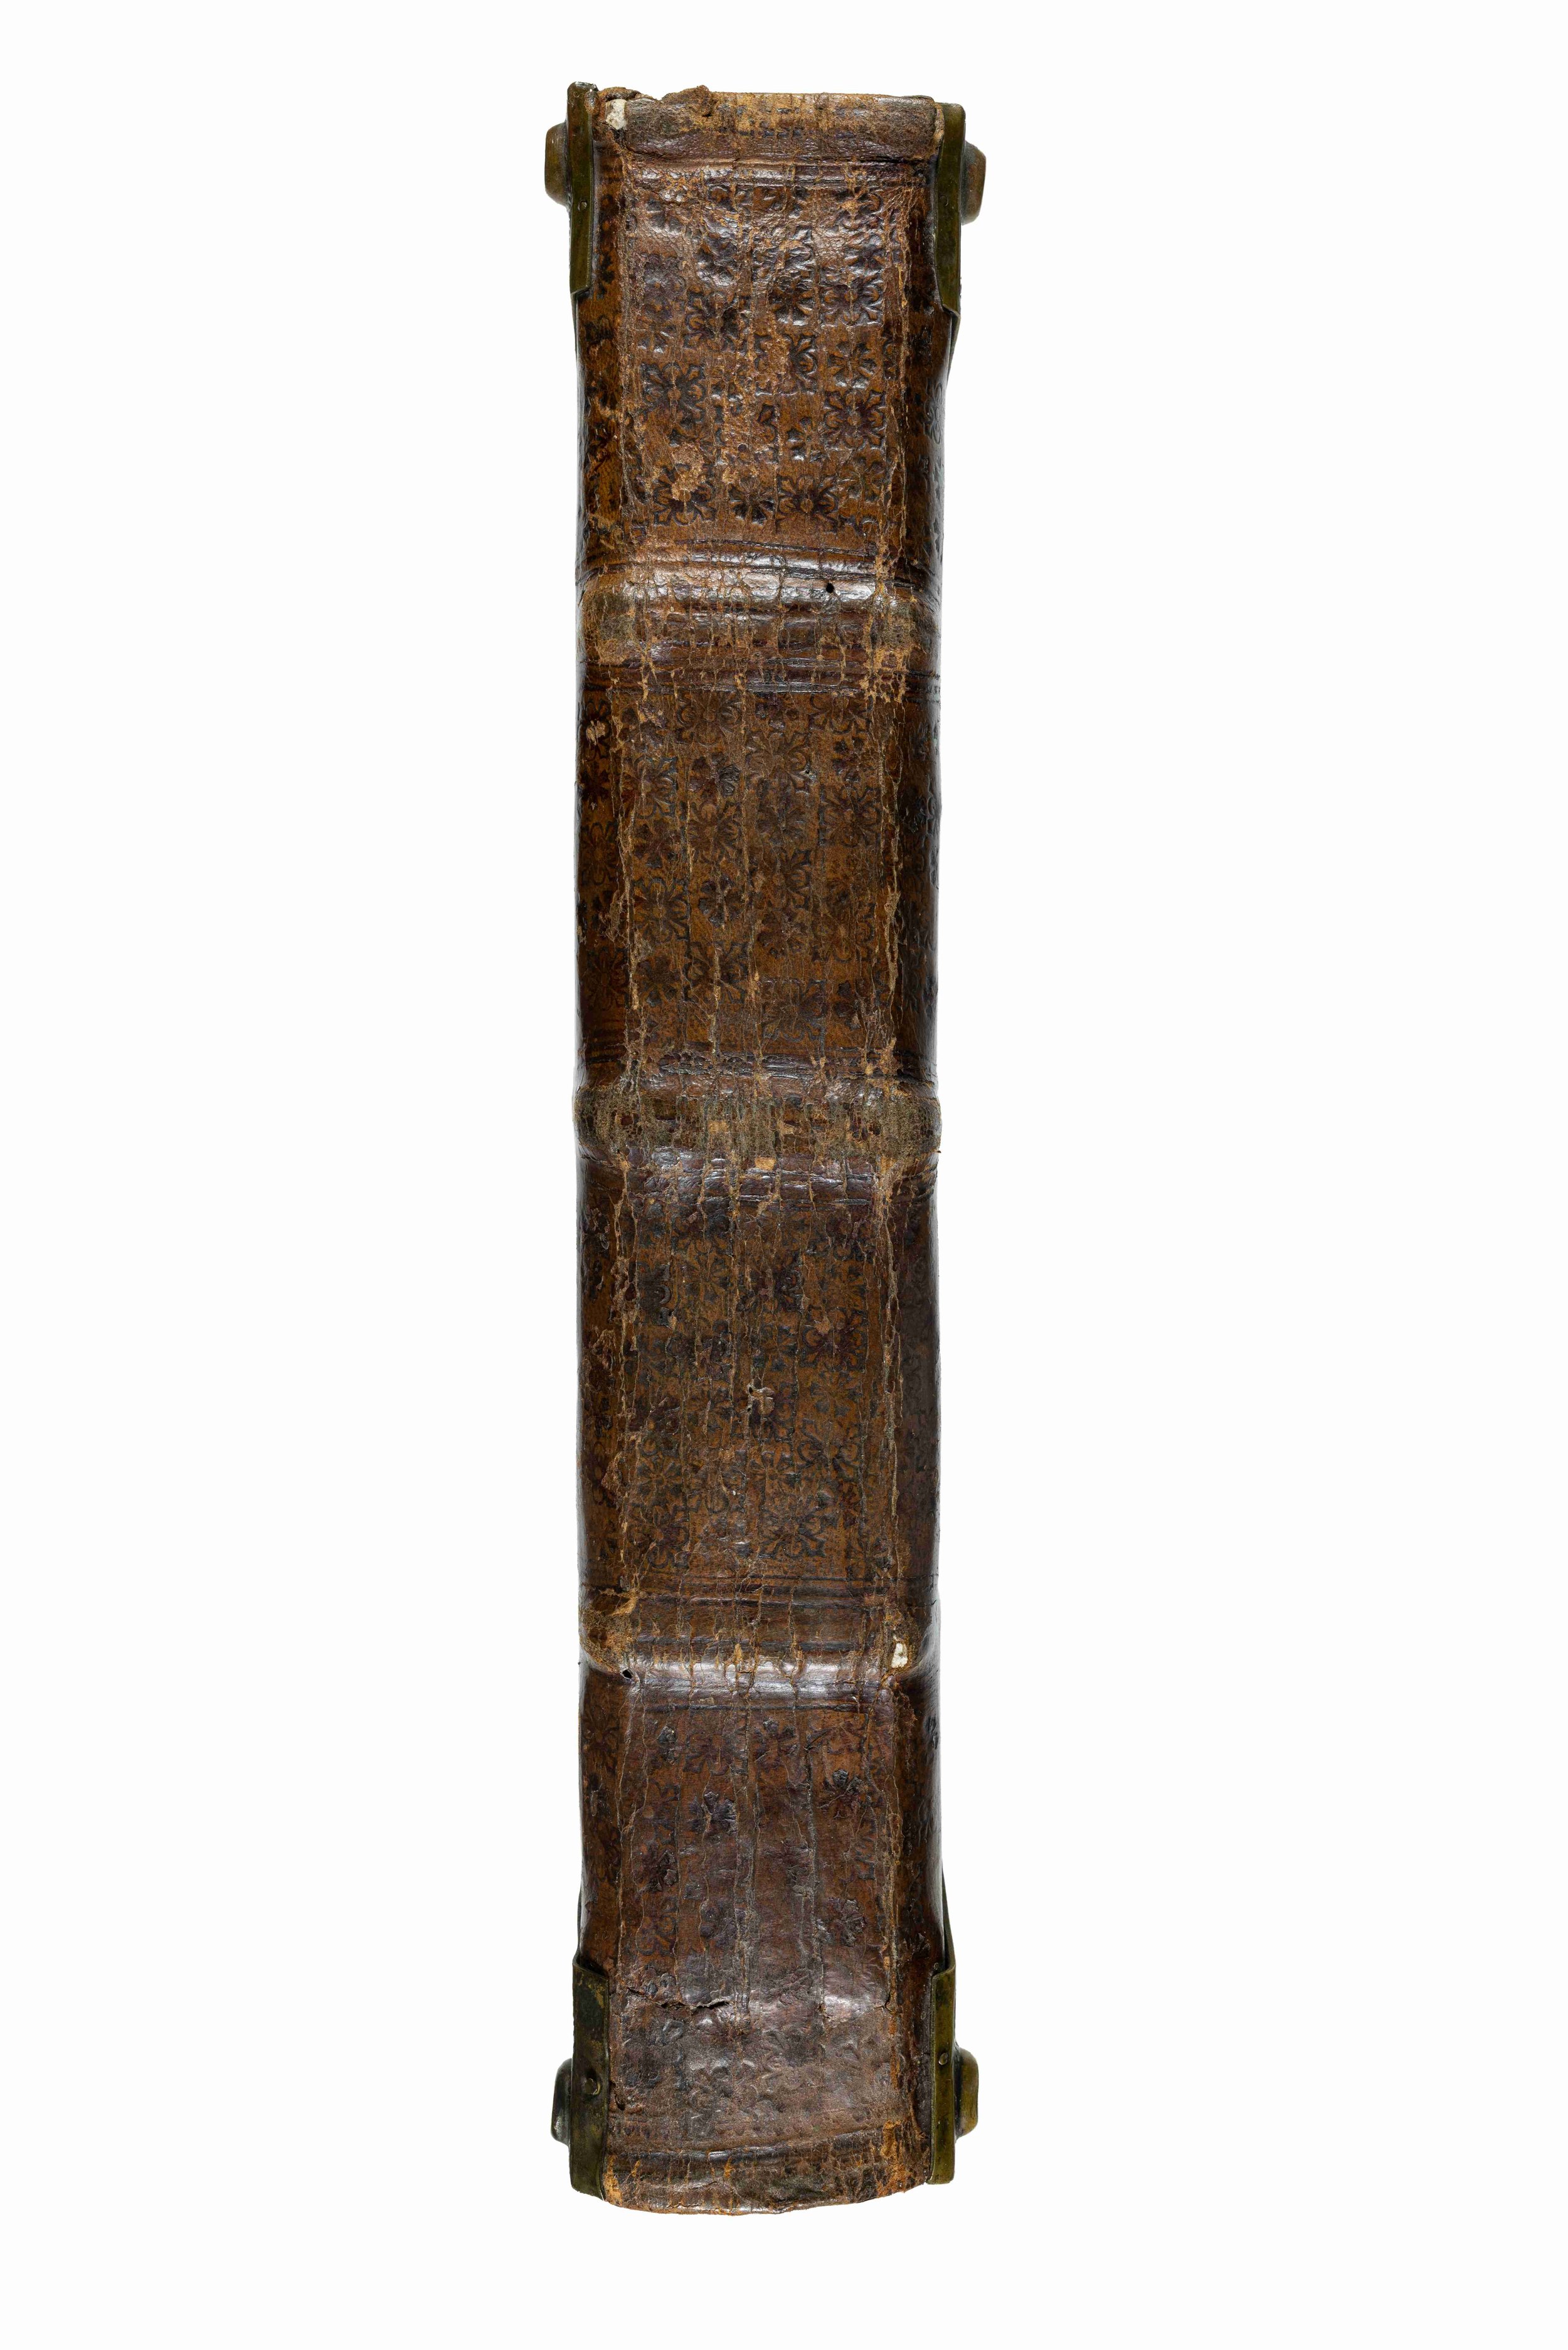 Missale-Saltzeburgense-lucas-cranach-der-aeltere-elder-crucifixion-missel-illuminated-woodcut-1506-7.jpg